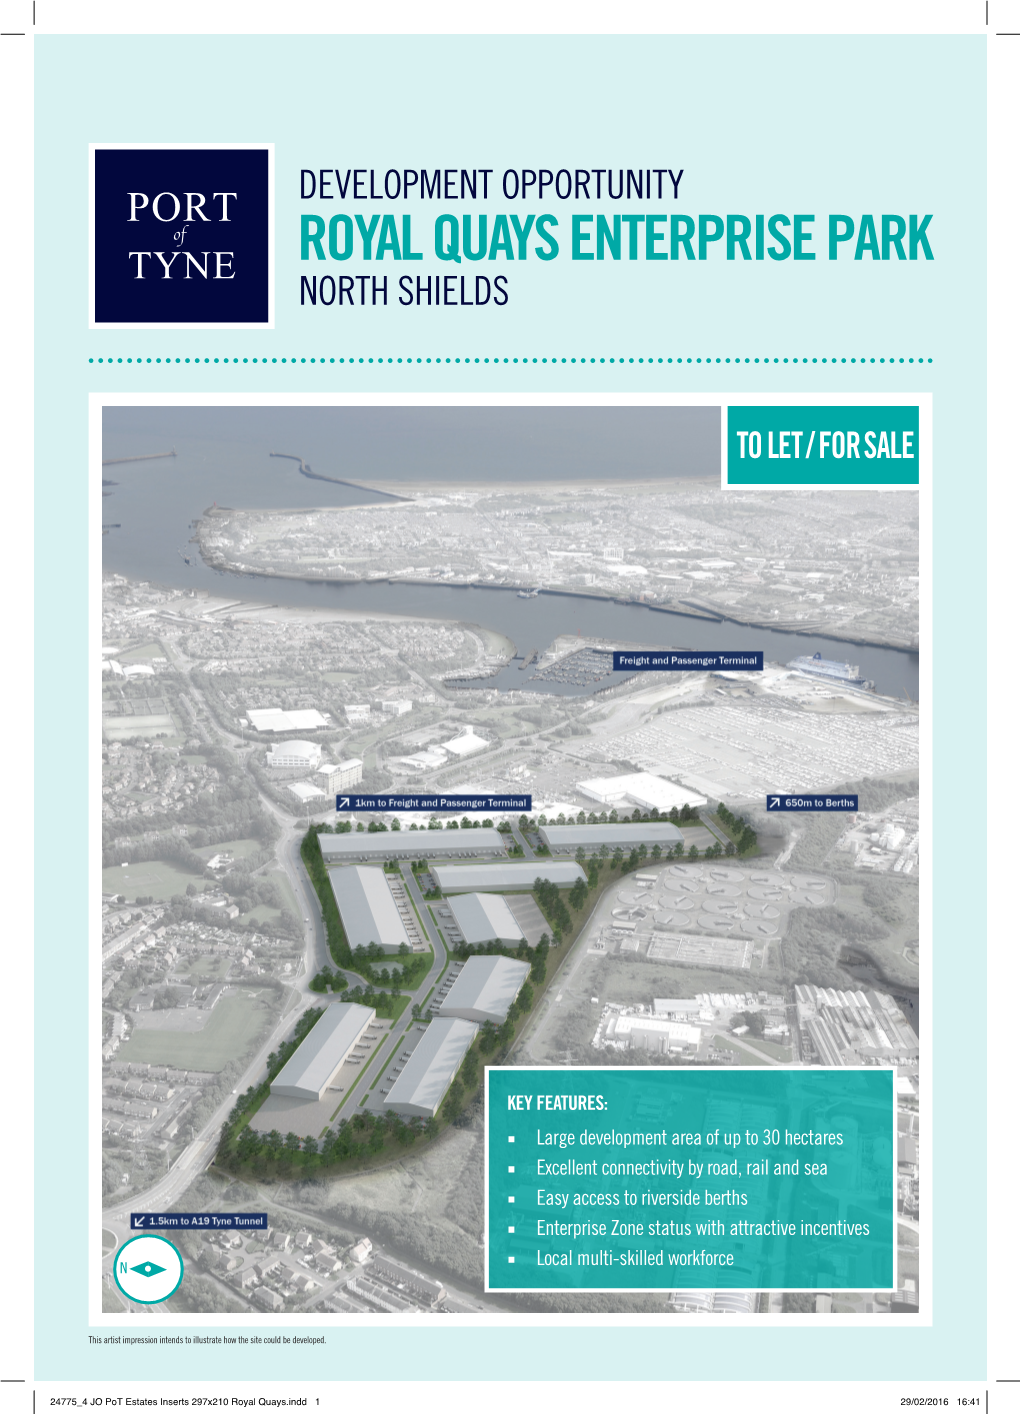 Royal Quays Enterprise Park North Shields